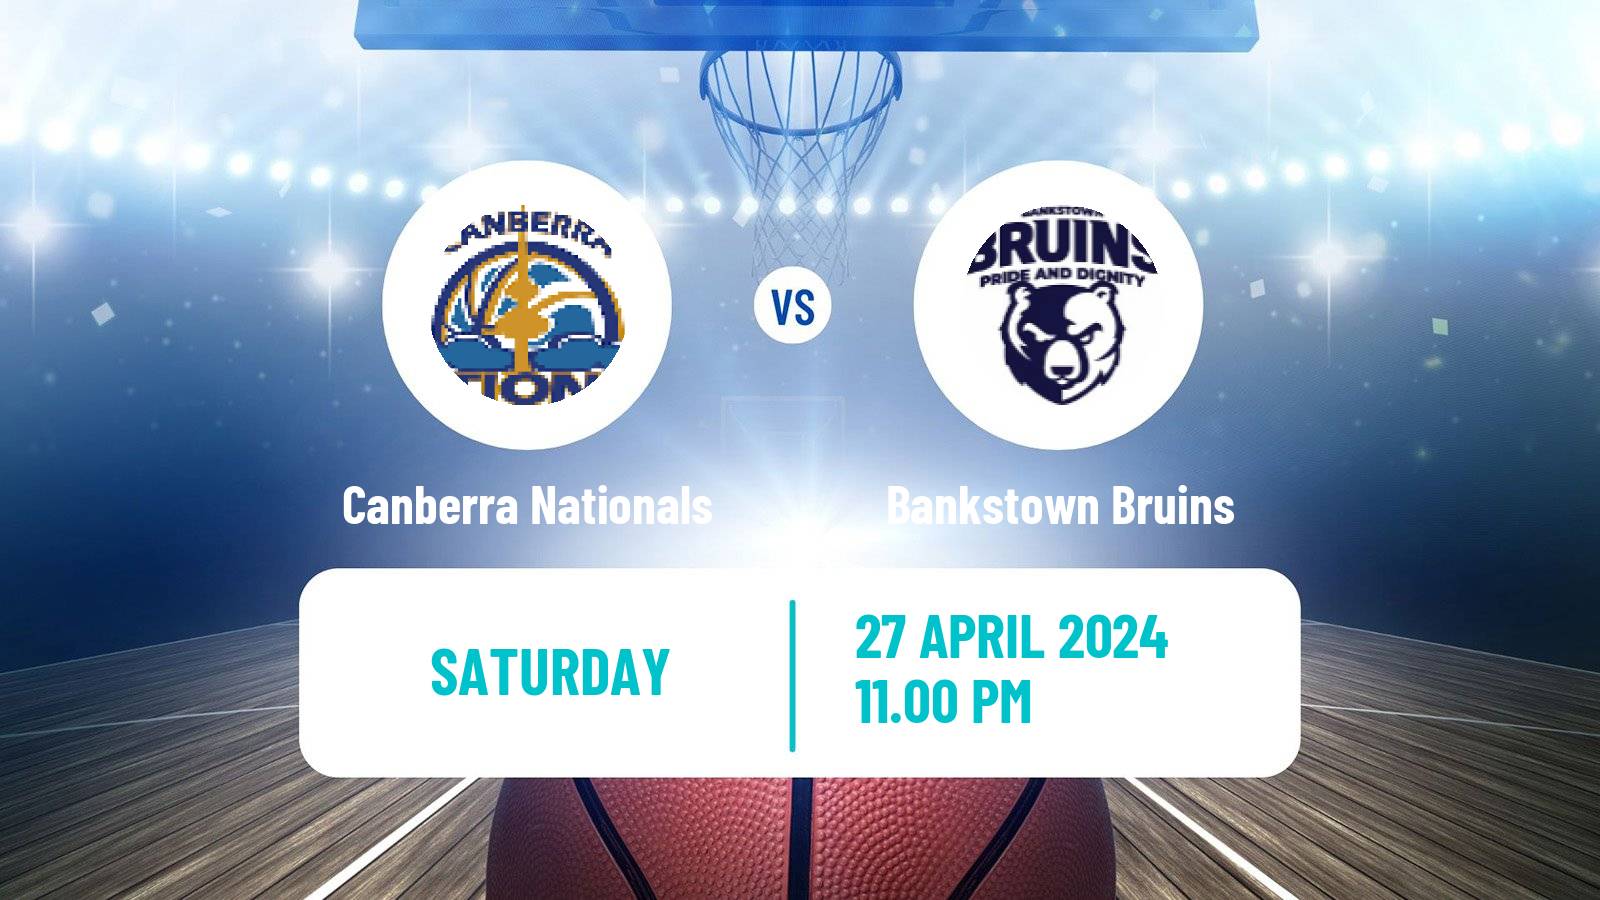 Basketball Australian NBL1 East Women Canberra Nationals - Bankstown Bruins